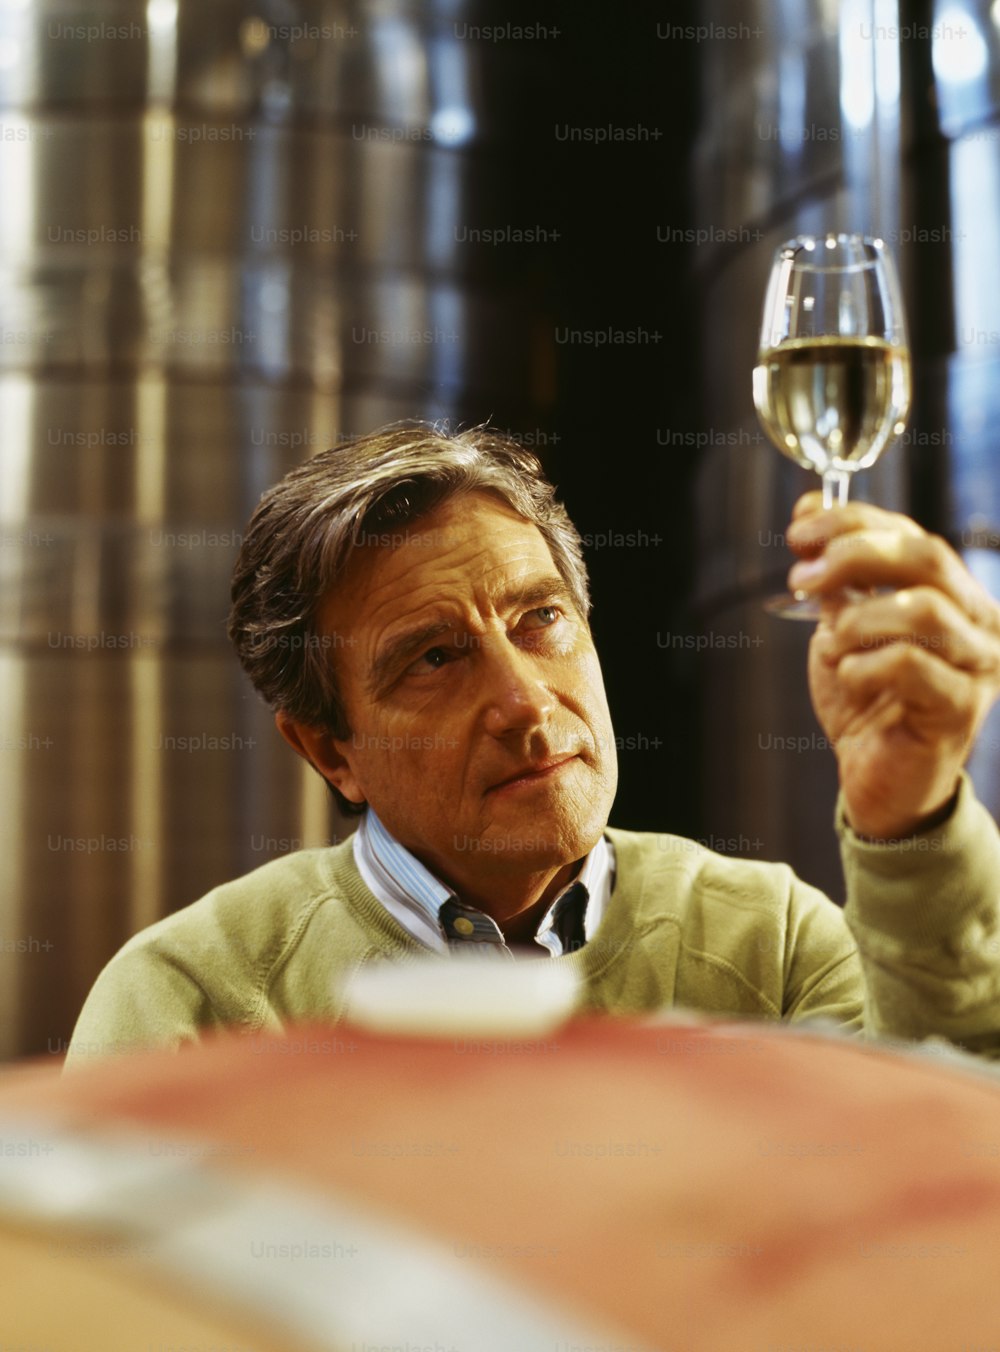 Un hombre sosteniendo una copa de vino en la mano